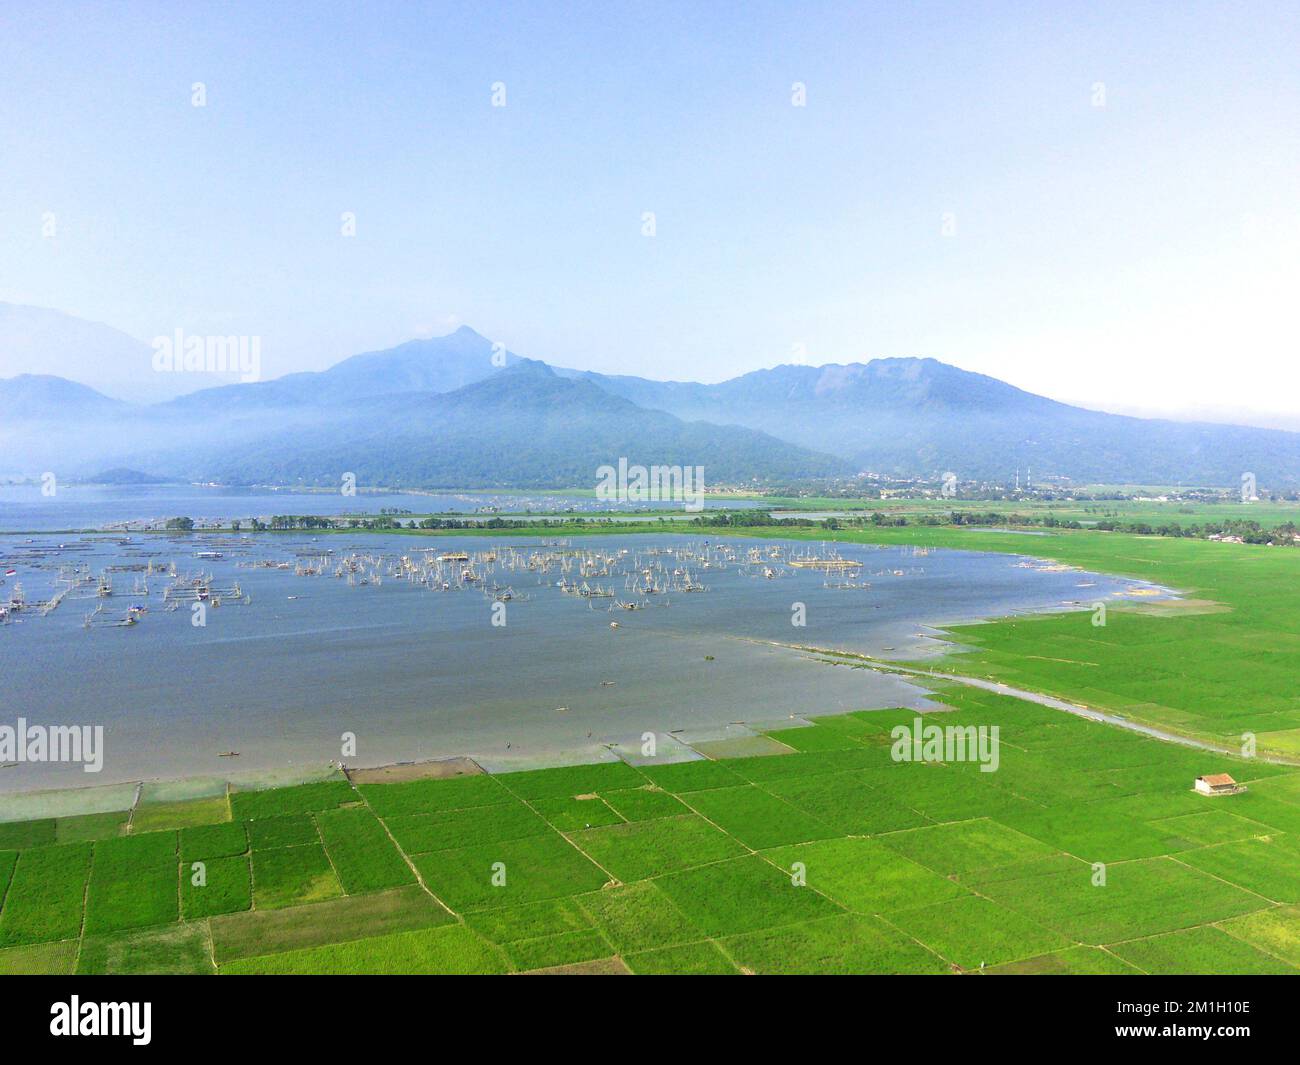 Ein Blick auf die Reisfelder in der Drohne vor dem Hintergrund des Rawa-Sees und der Berge in Ambarawa Stockfoto